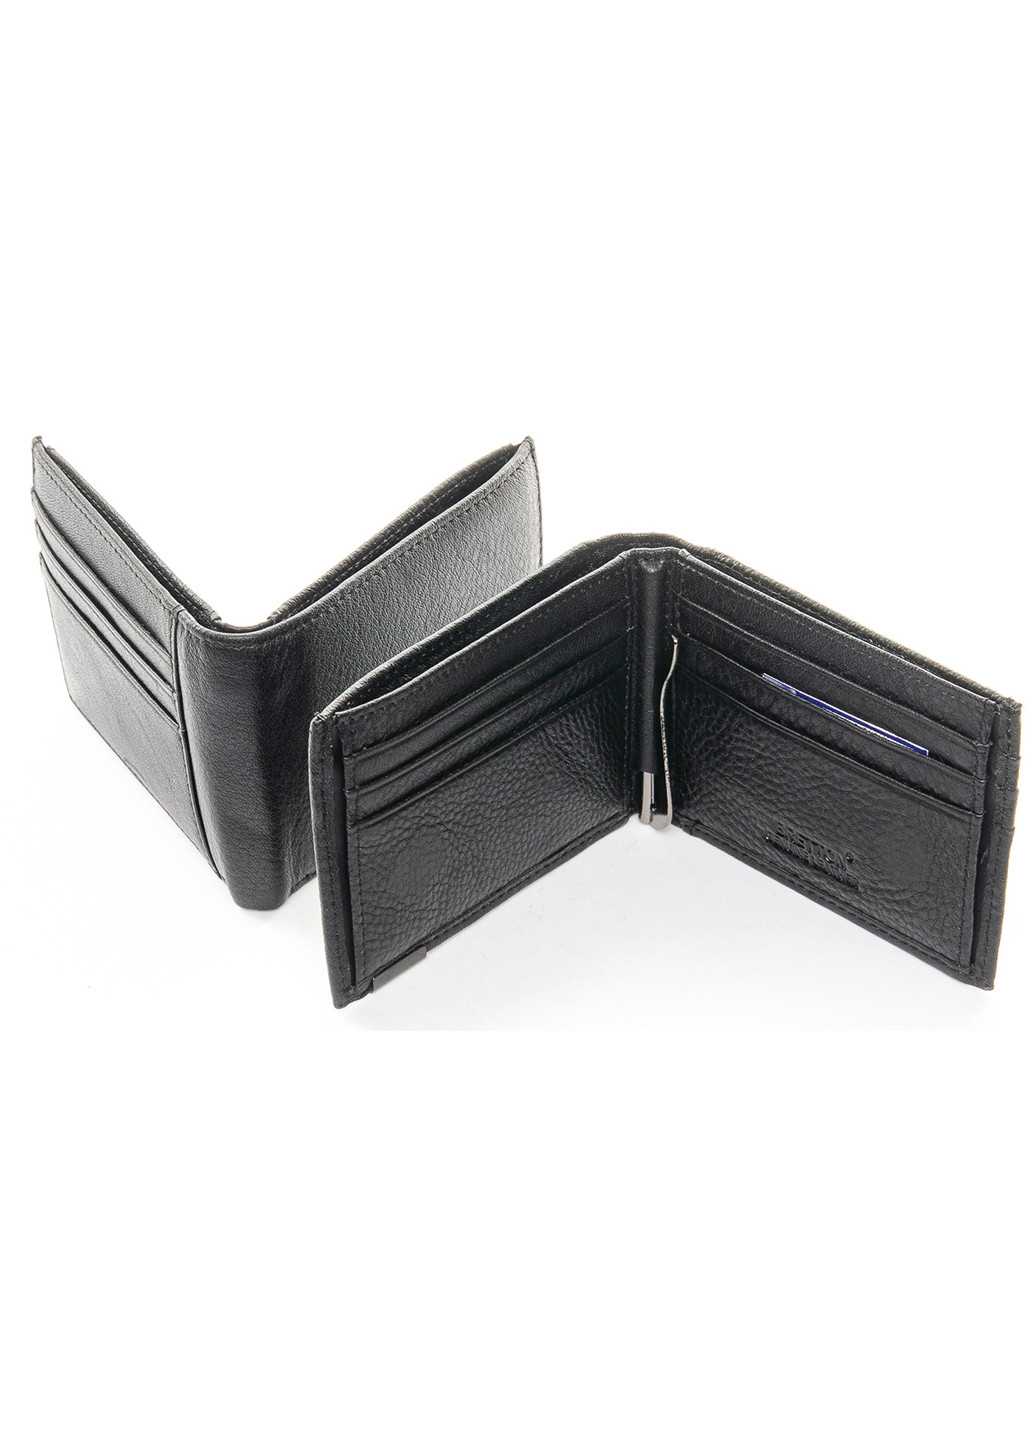 Мужской кожаный кошелек с зажимом Bretton 168-24c (277813675)